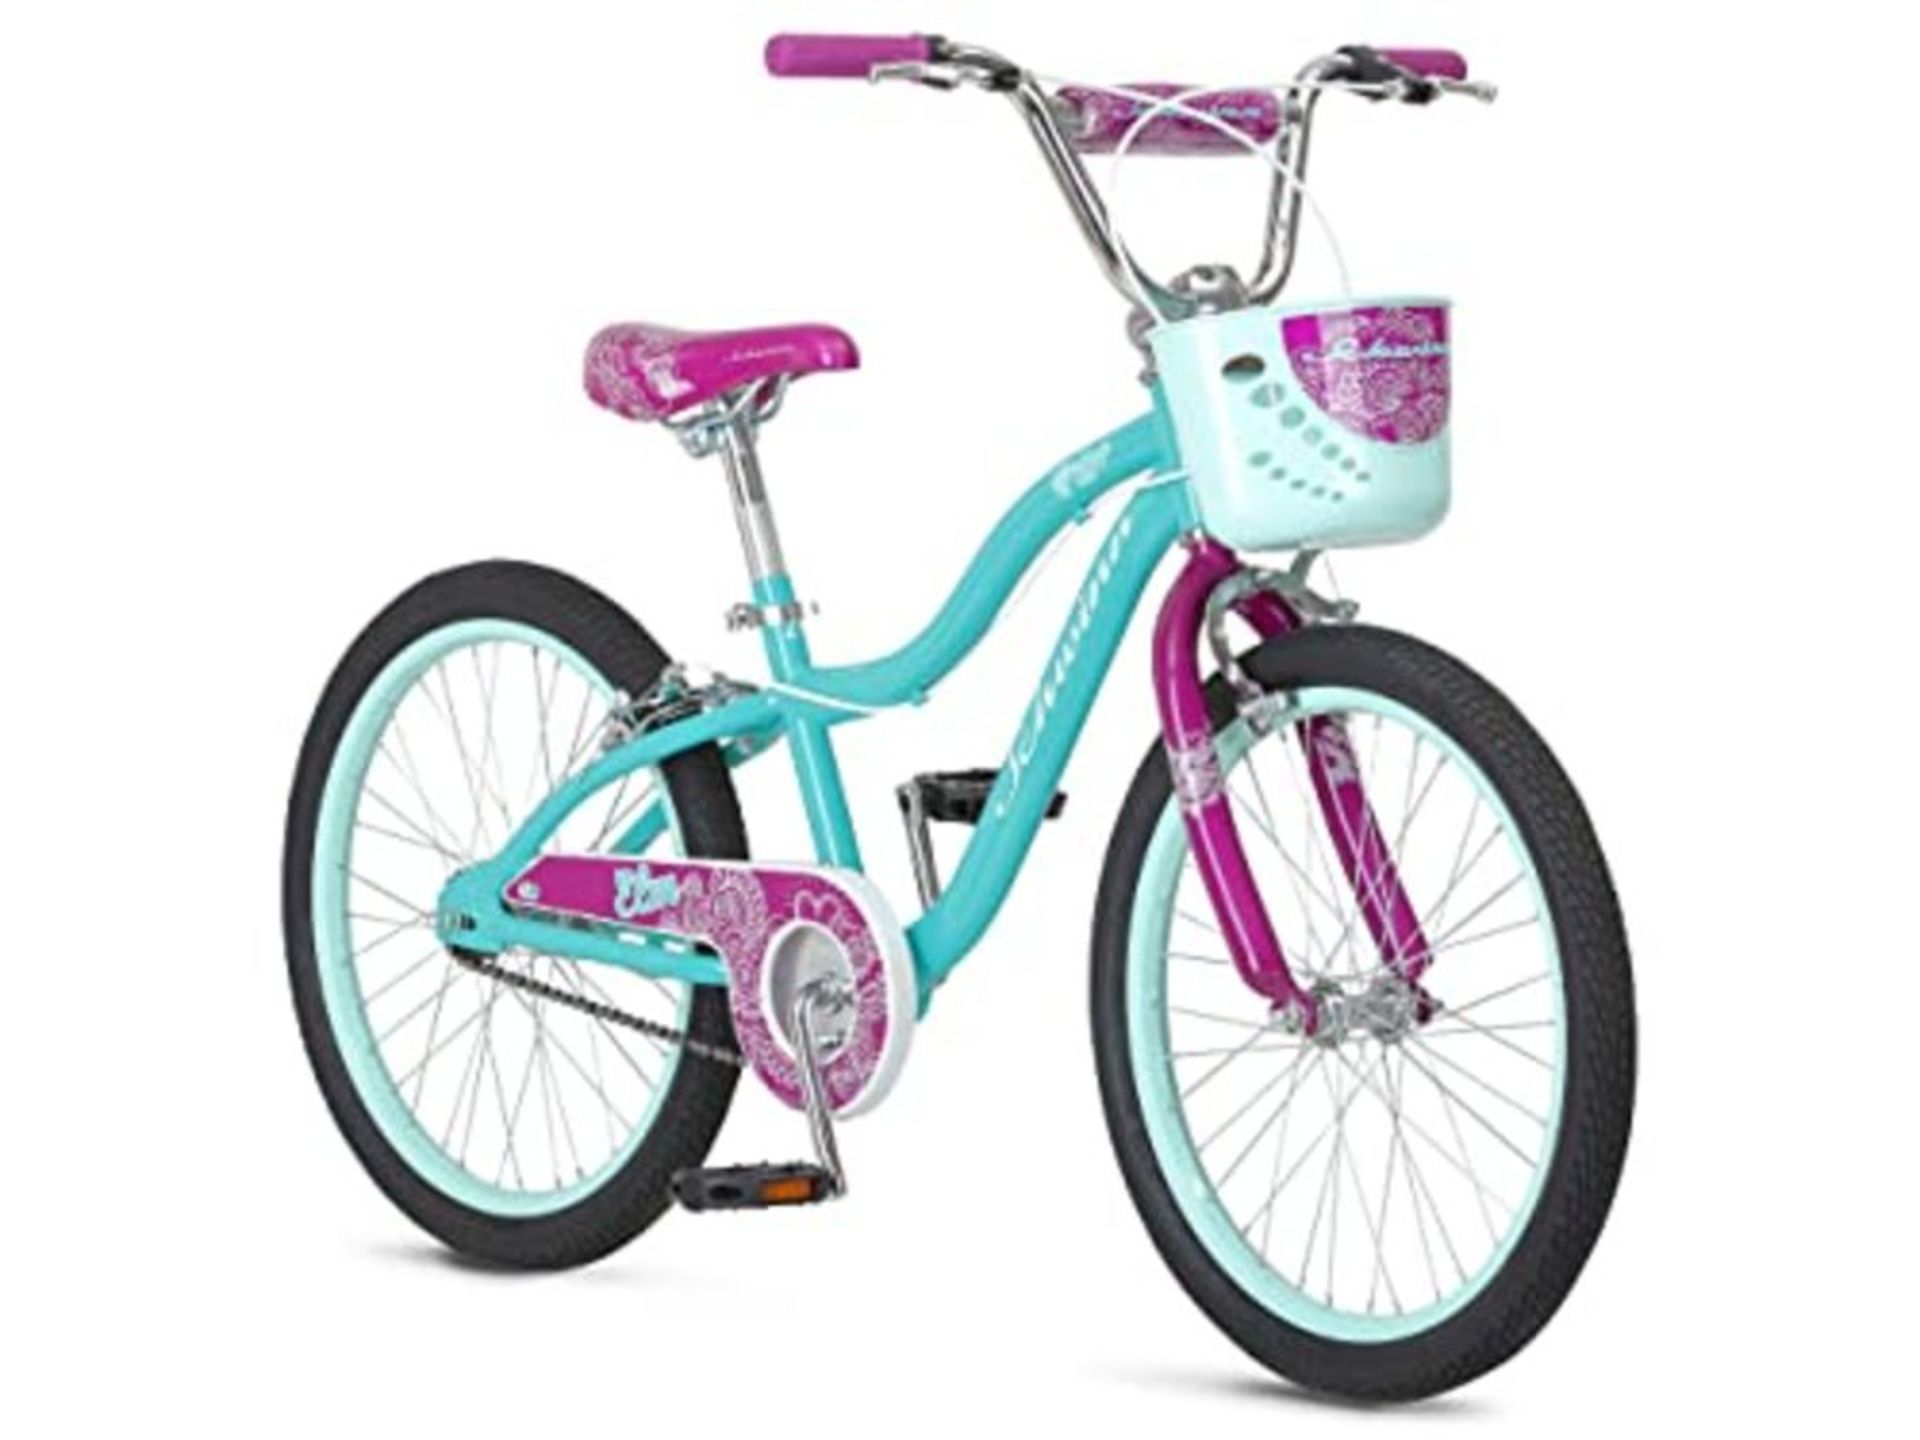 RRP £159.00 Schwinn Girls' Elm Bicycle, Teal, 20-inch Wheels